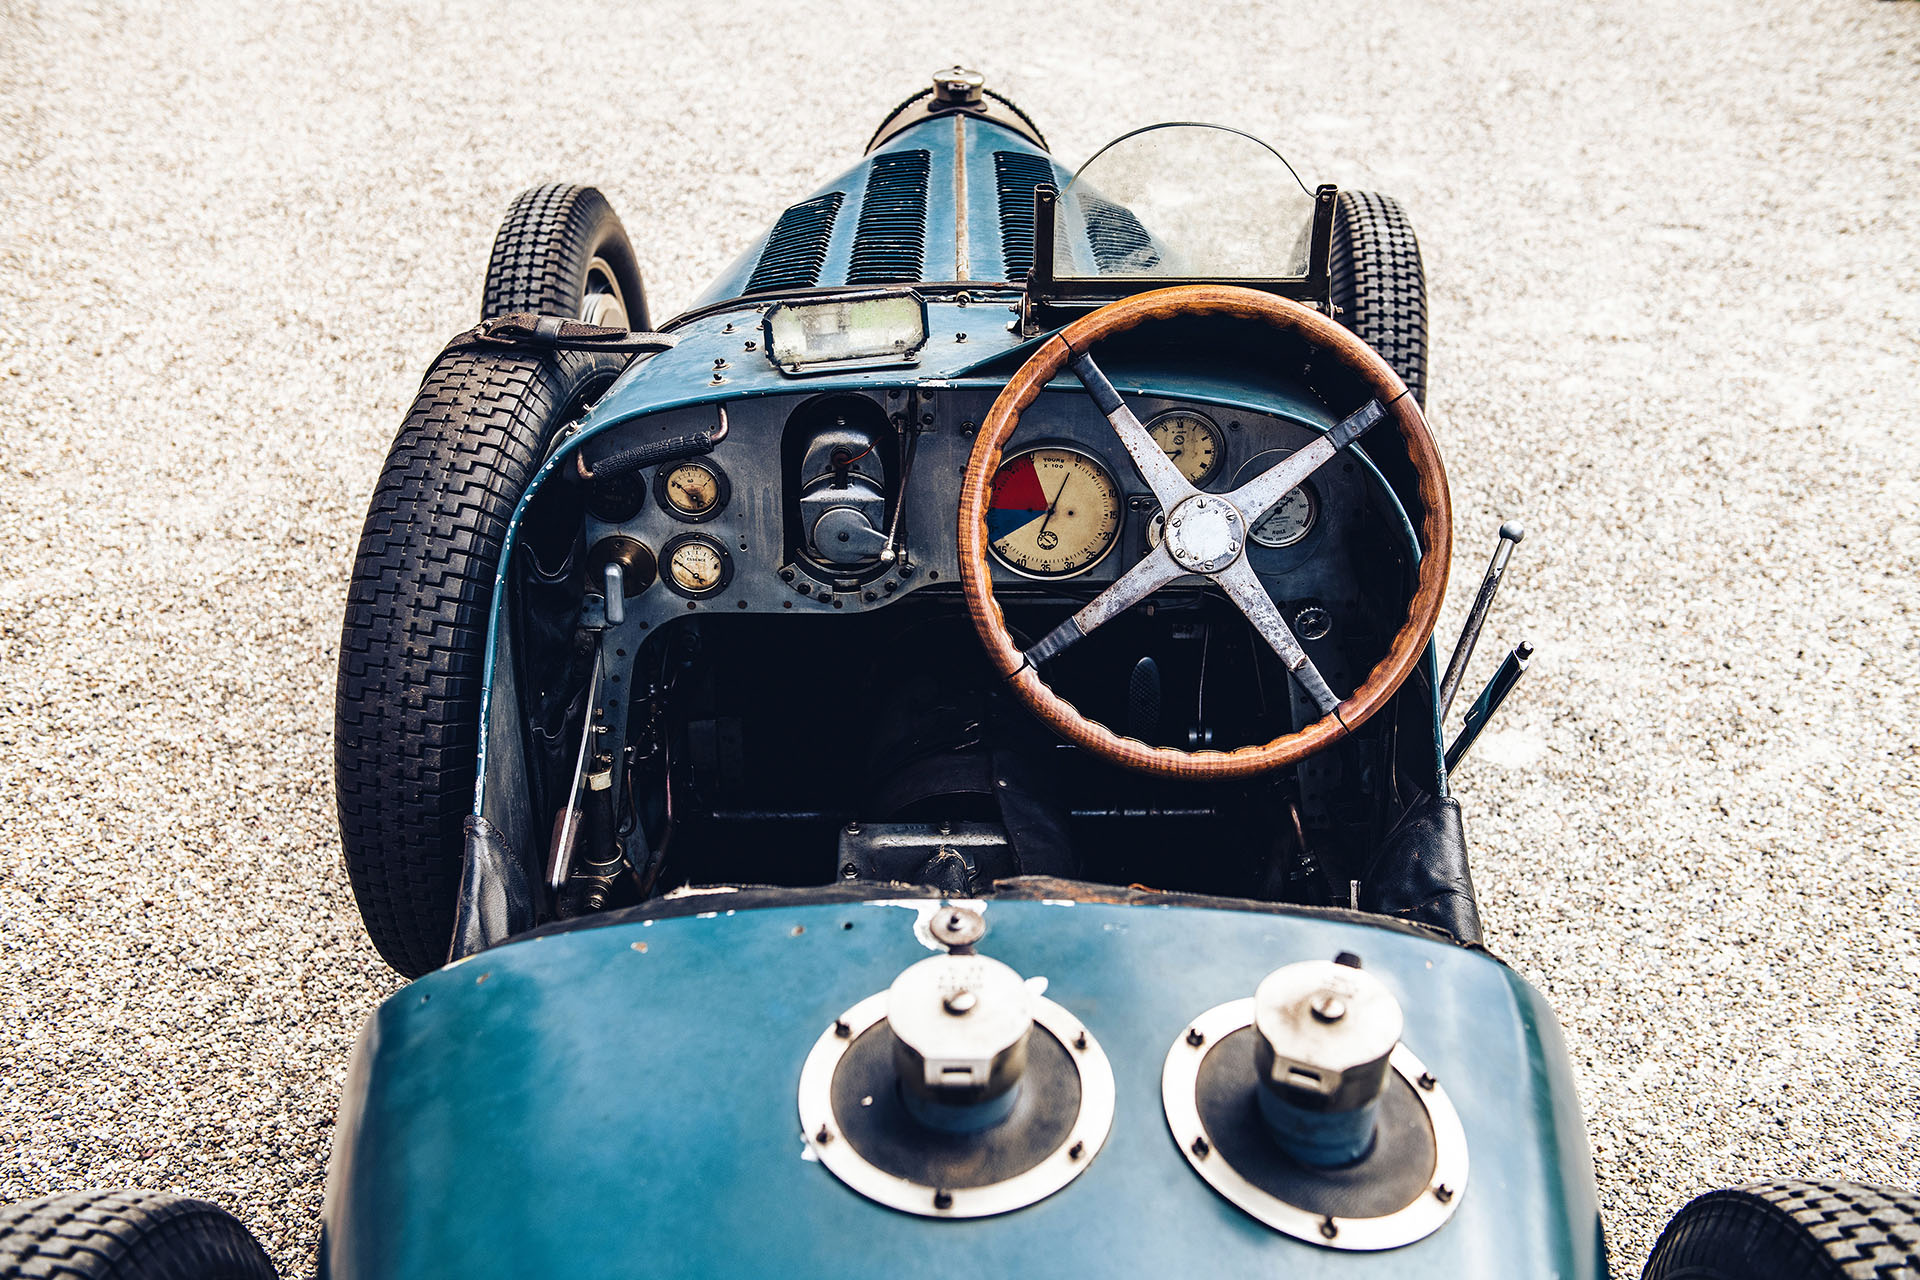 home finally Unique of pieces Bugatti history